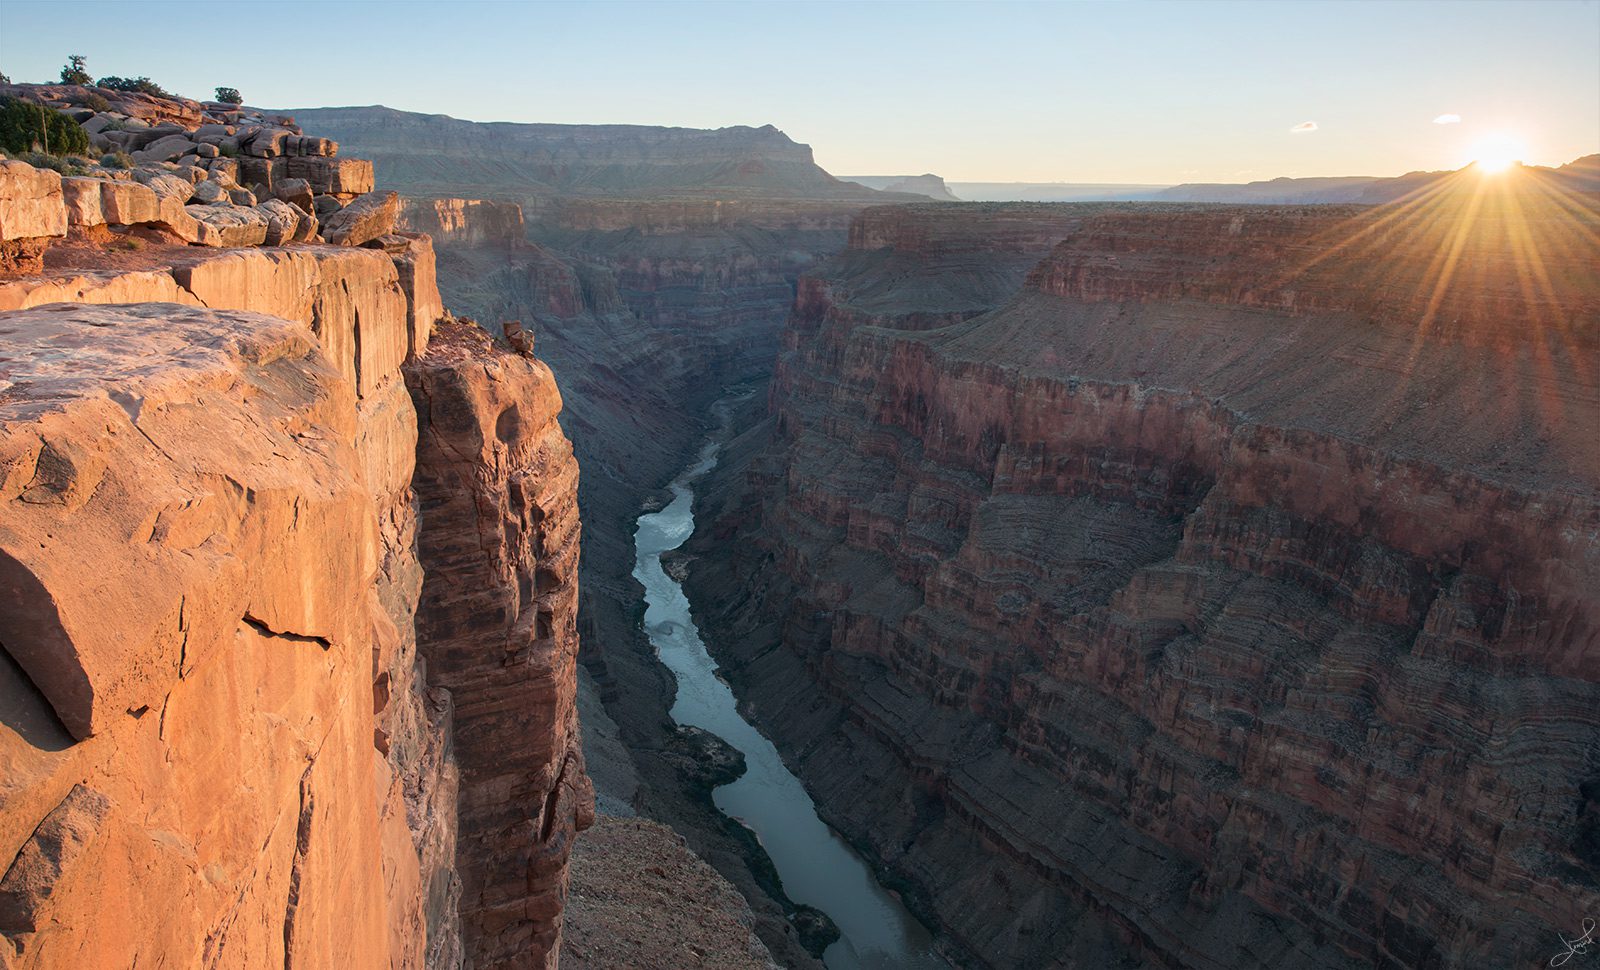 The Colorado River cutting through the Grand Canyon.